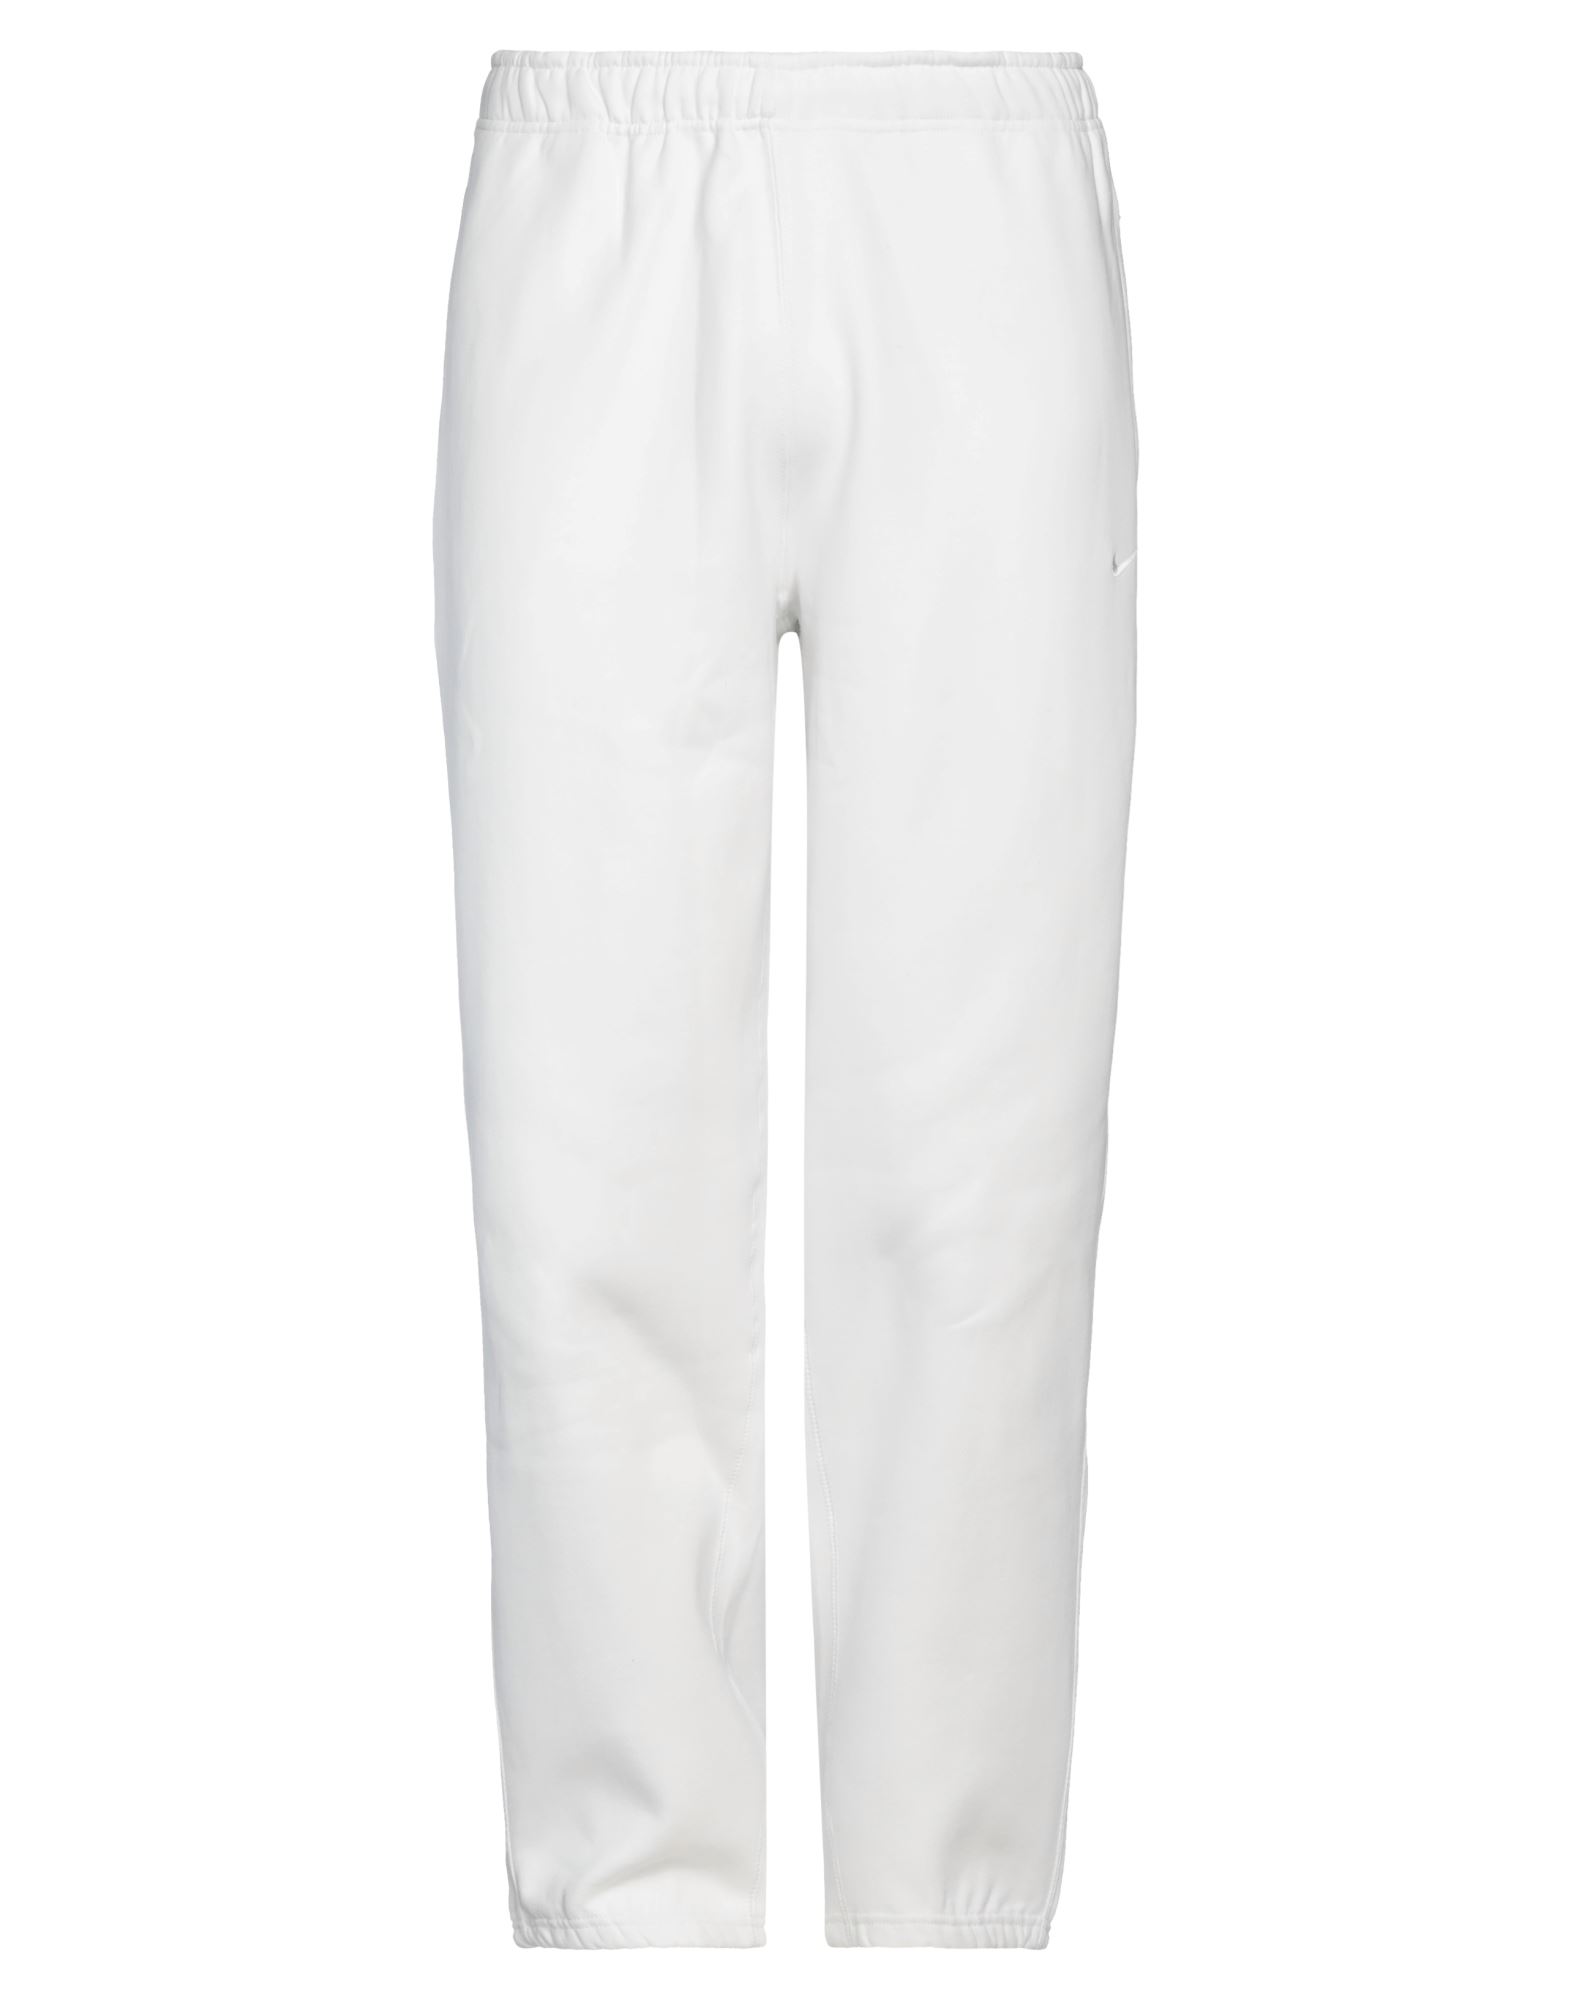 Nike Man Pants White Size Xxl Cotton, Polyester